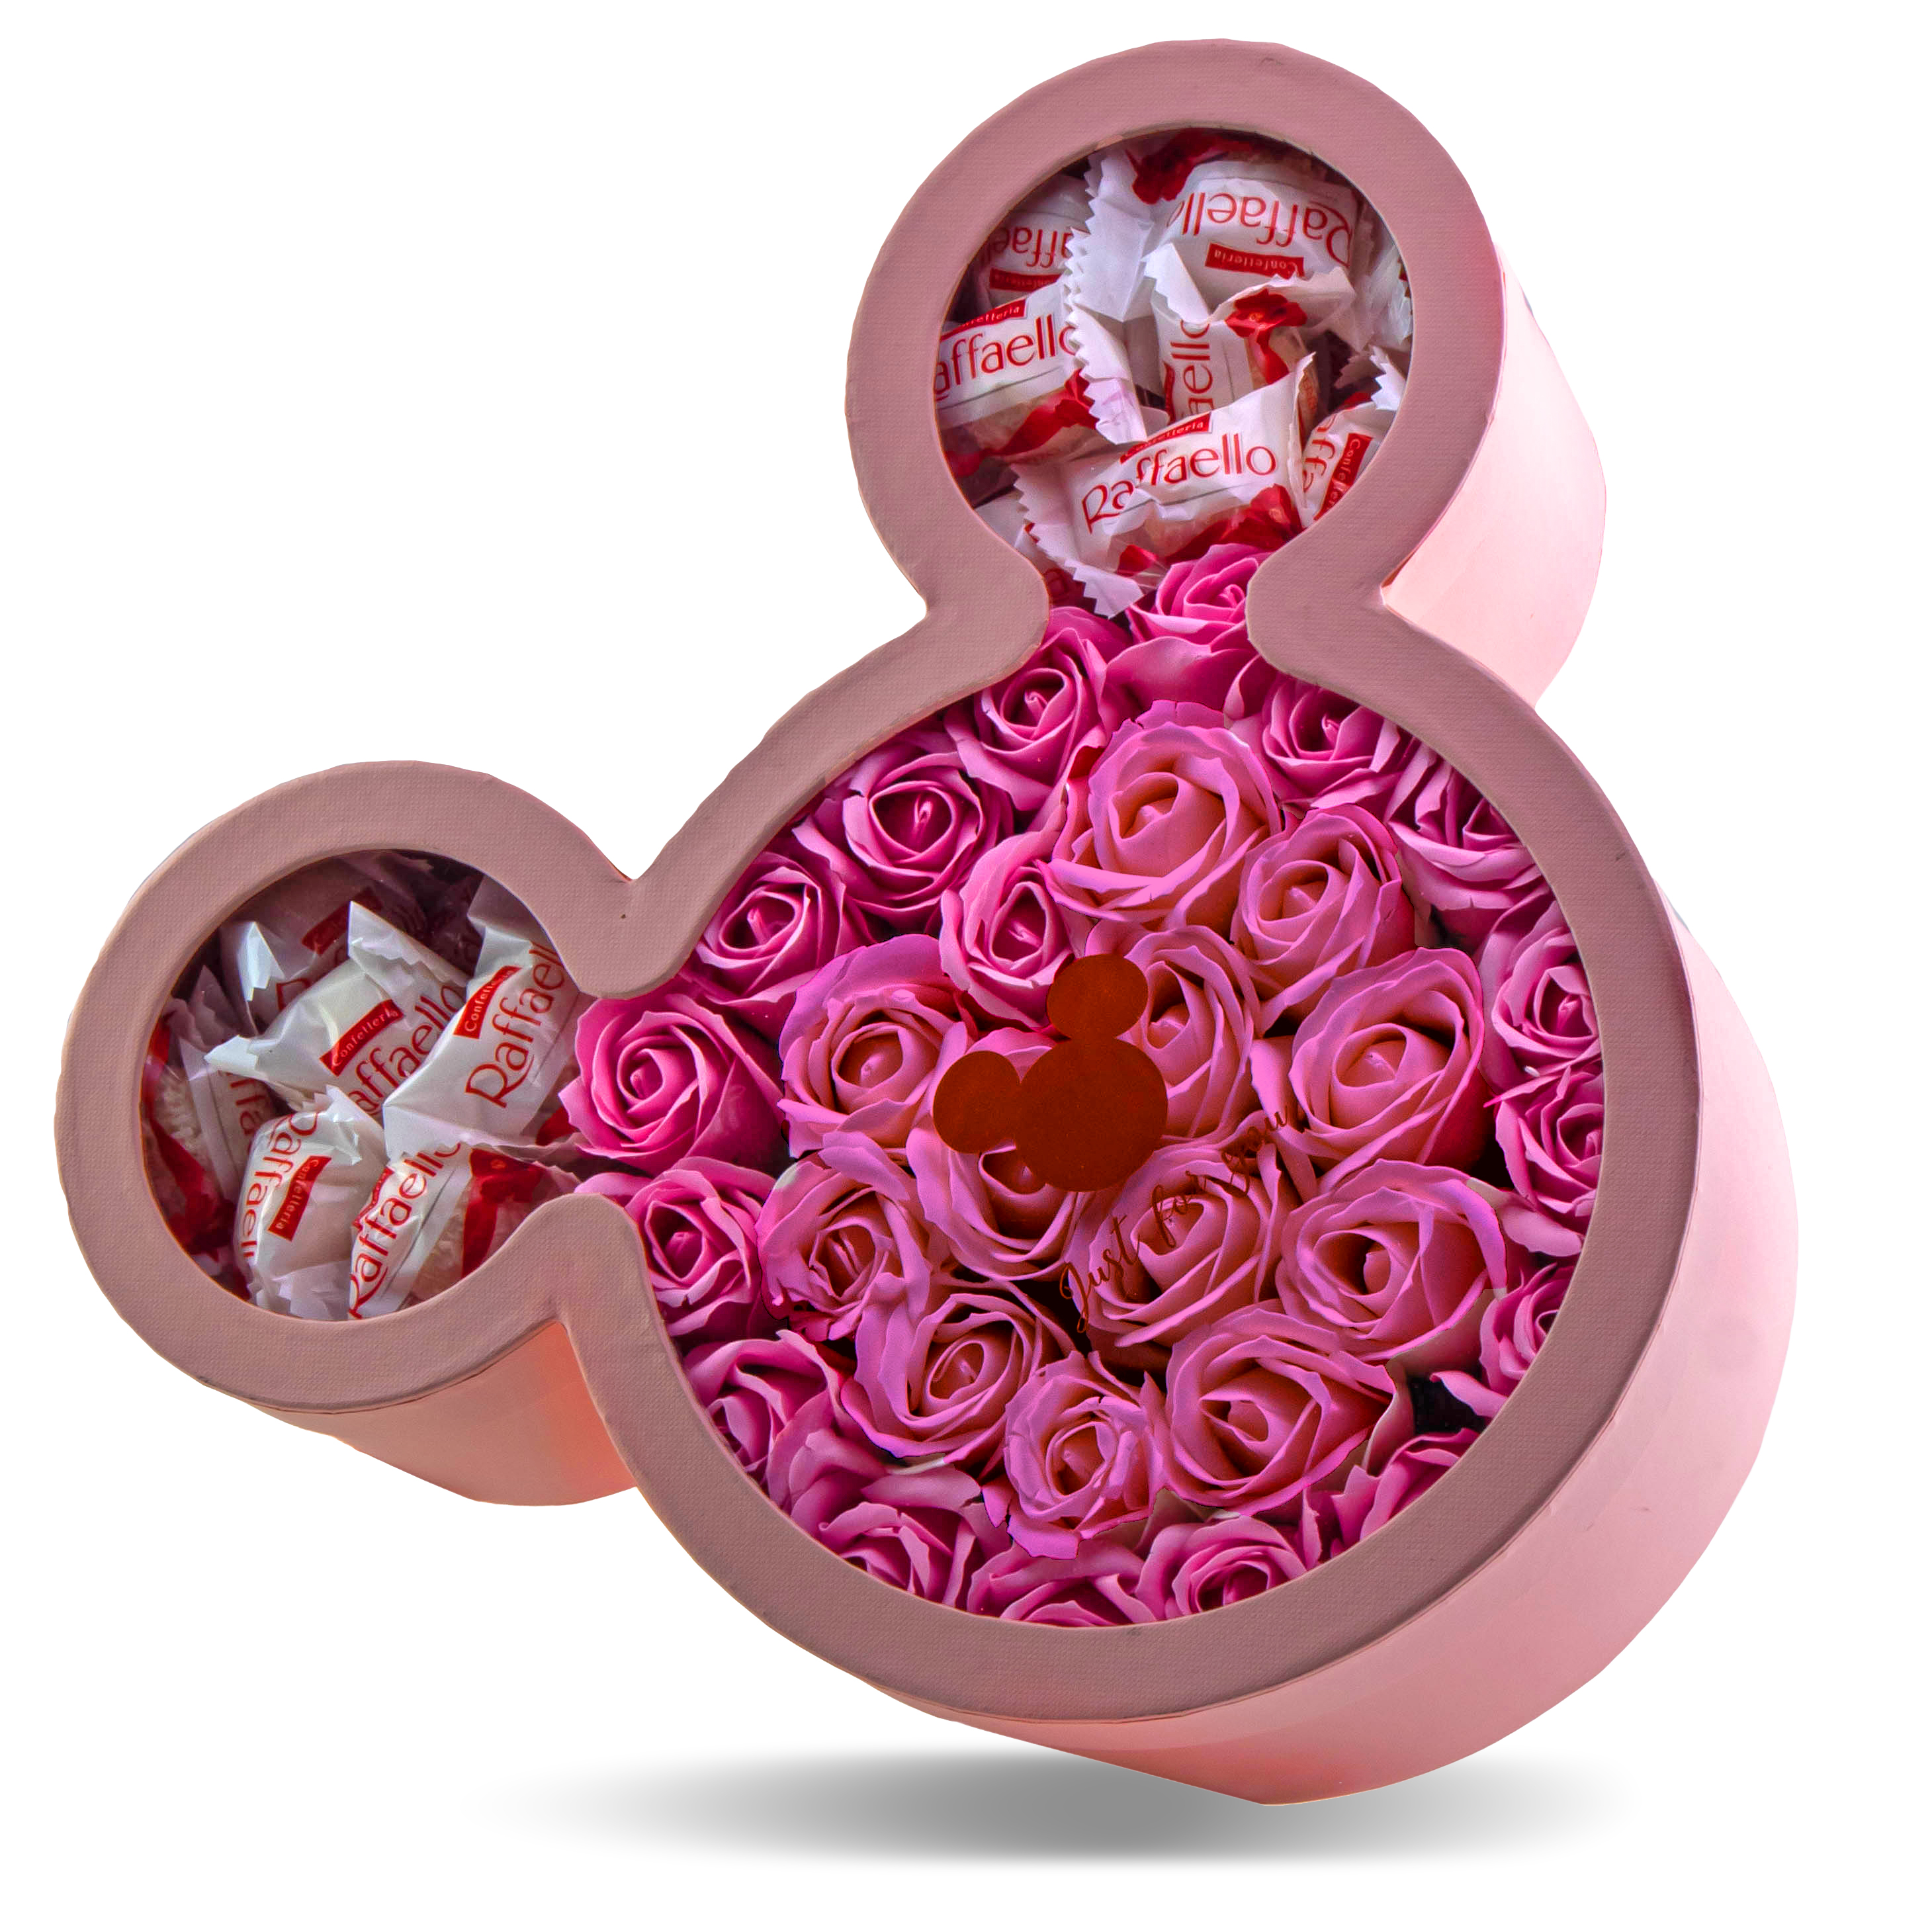 Ružový Mickey box s ružovými ružami a bonbónmi raffaello